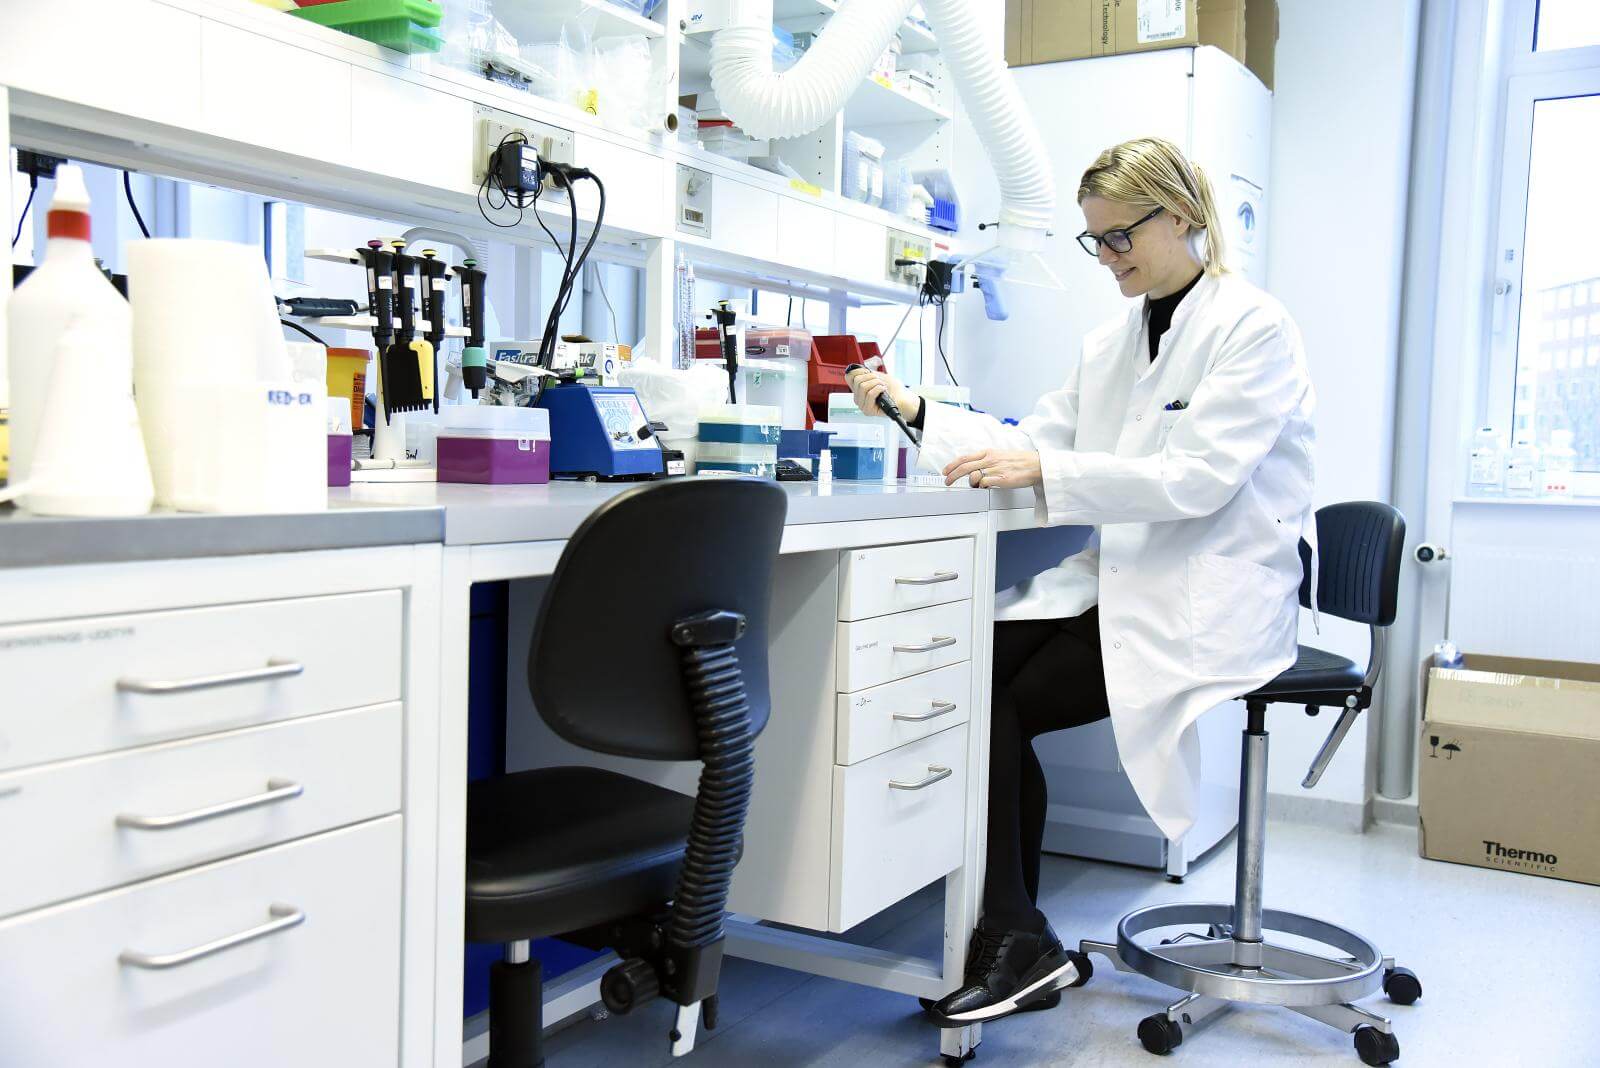 Miriam sidder i hvid kittel i et laboratorium med en pipette i hånden 